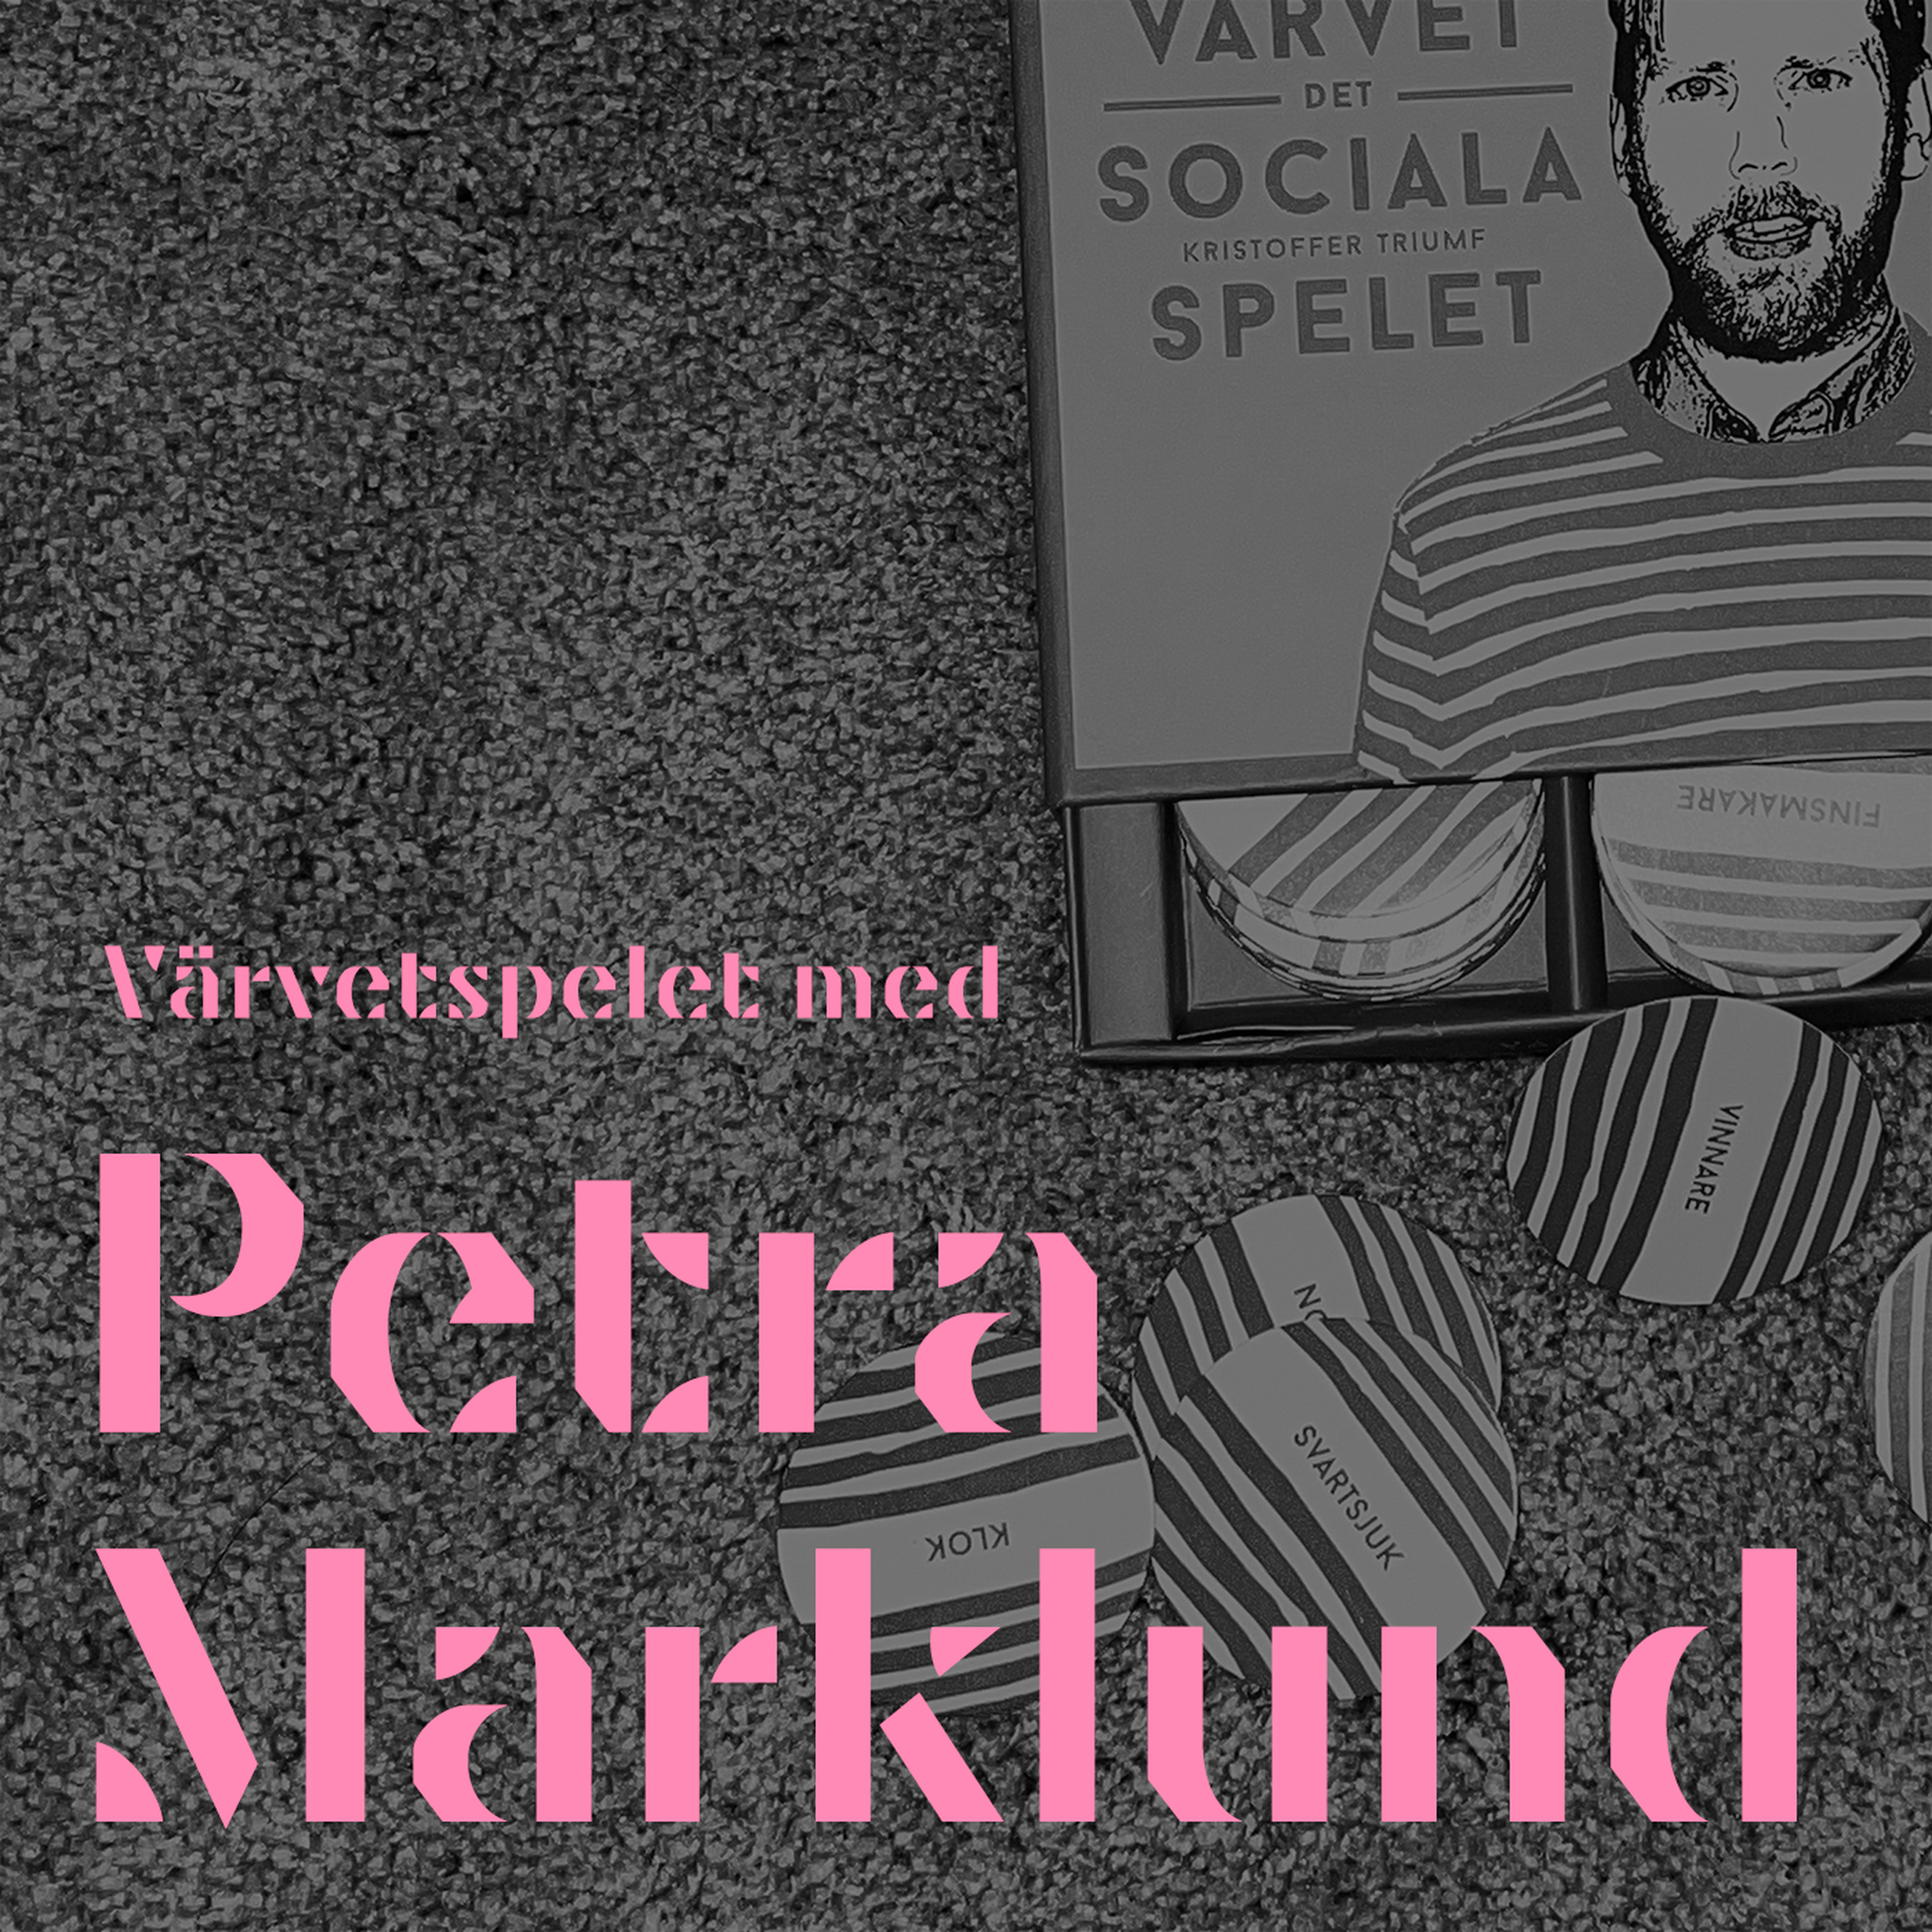 VÄRVETSPELET med Petra Marklund